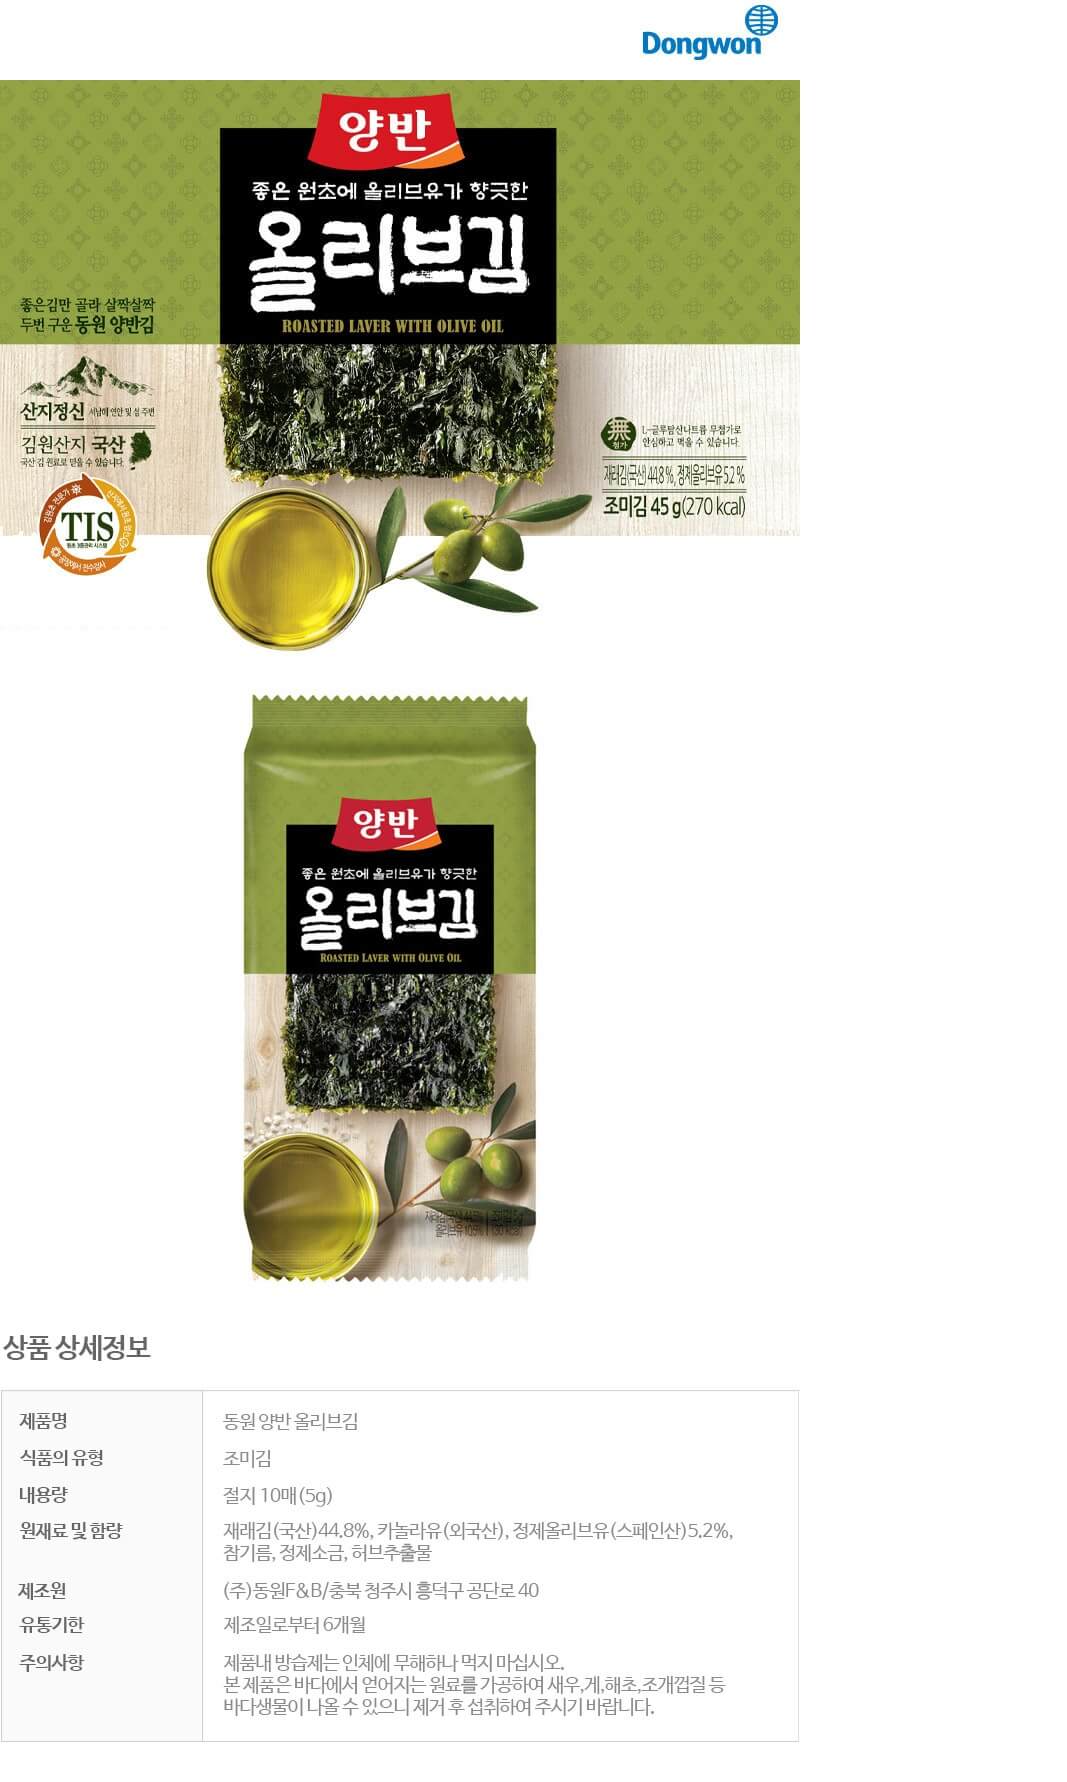 韓國食品-[동원] 양반올리브유로구운김 5g*4입